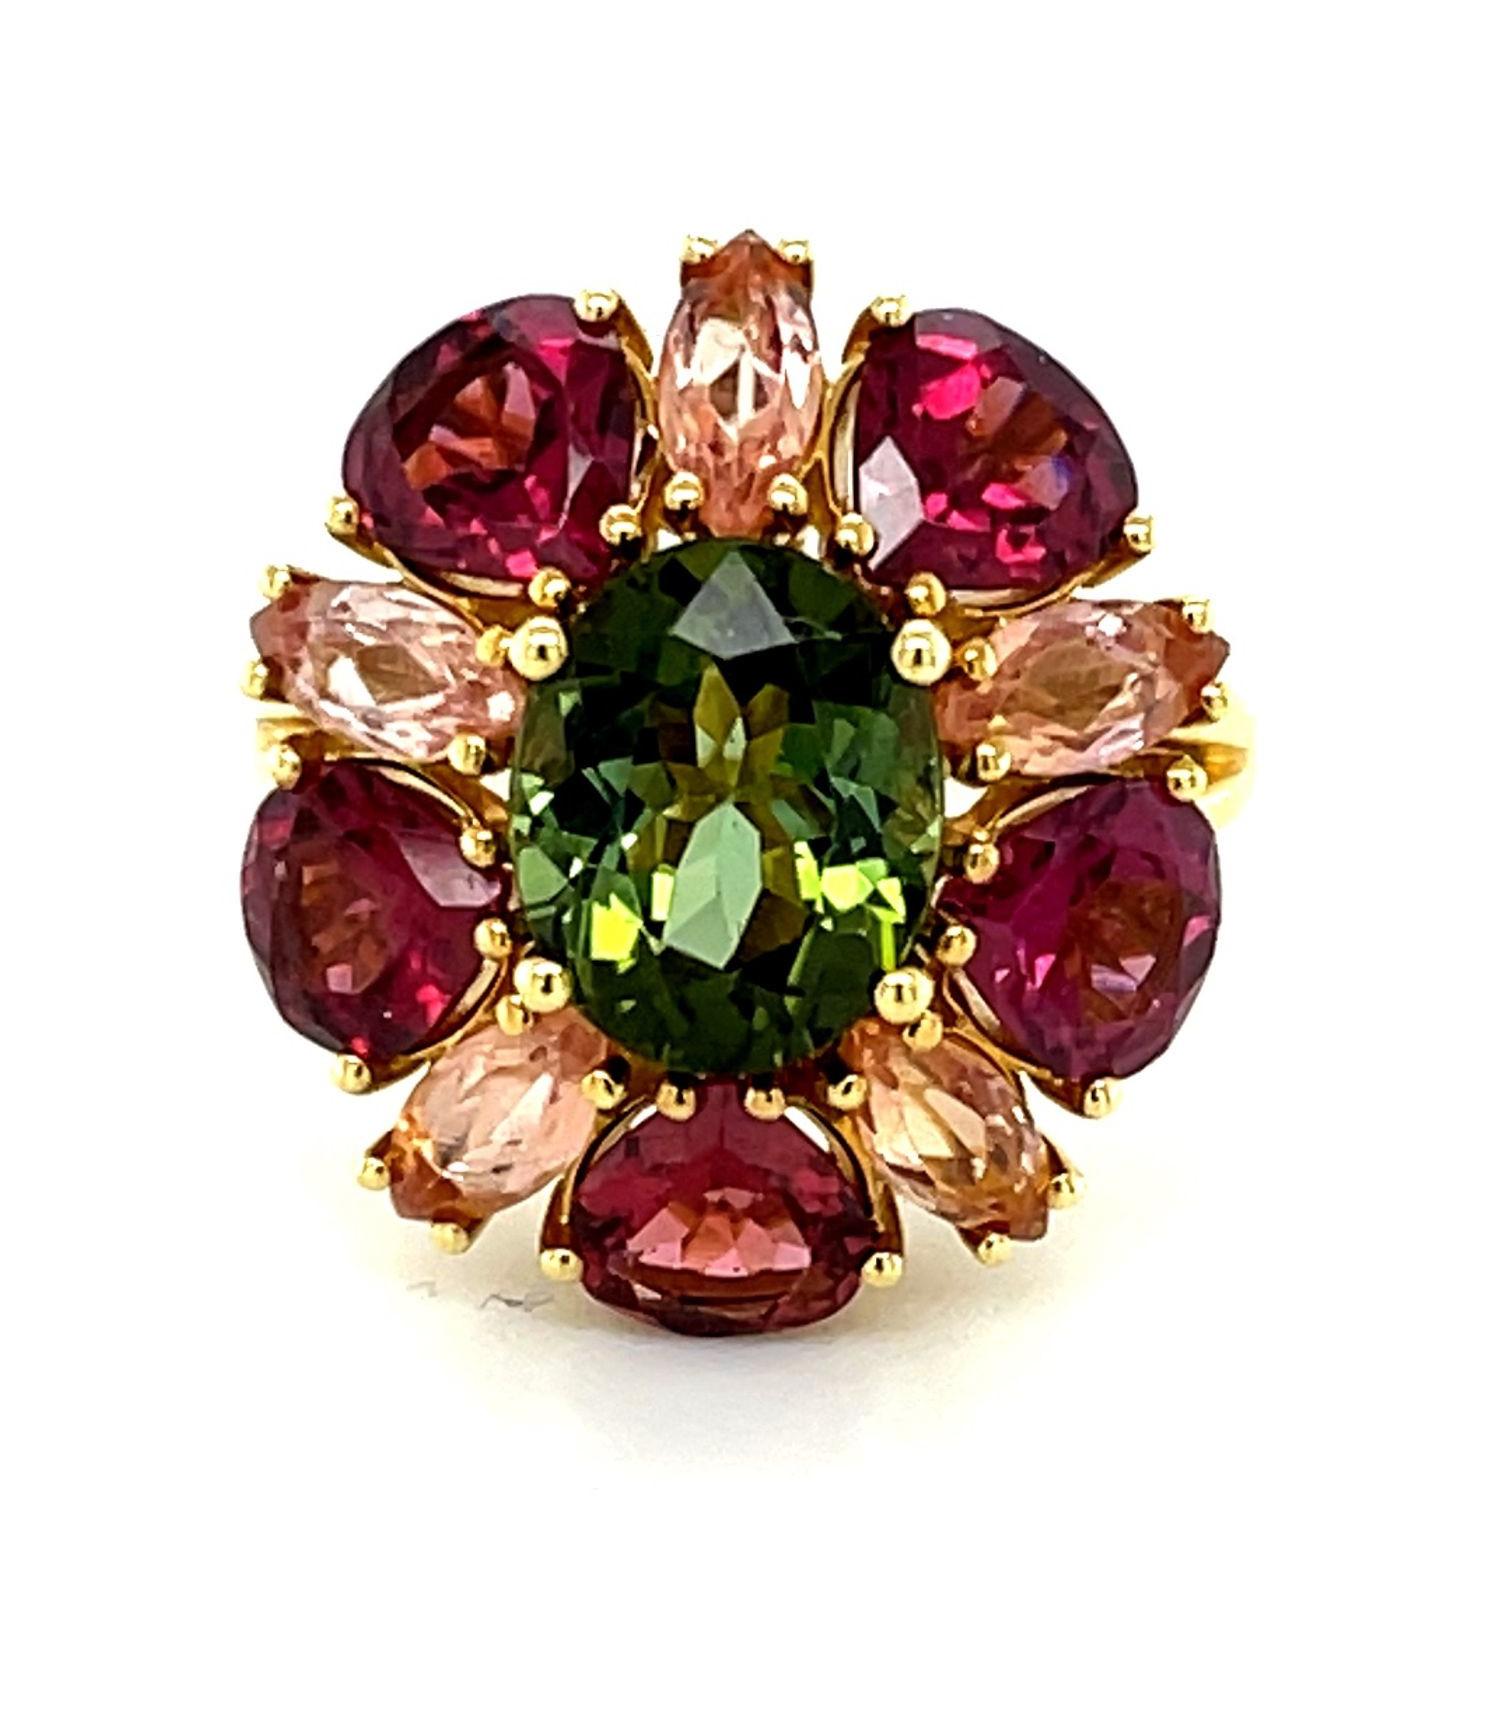 Dieser fröhliche Ring mit einem Kaleidoskop aus Edelsteinen wird Sie zum Lächeln bringen! Ein lebhaftes grünes Turmalin-Oval wird von runden, birnenförmigen Granaten und marquise-förmigen, kostbaren Topasen in einer einzigartigen Kombination von